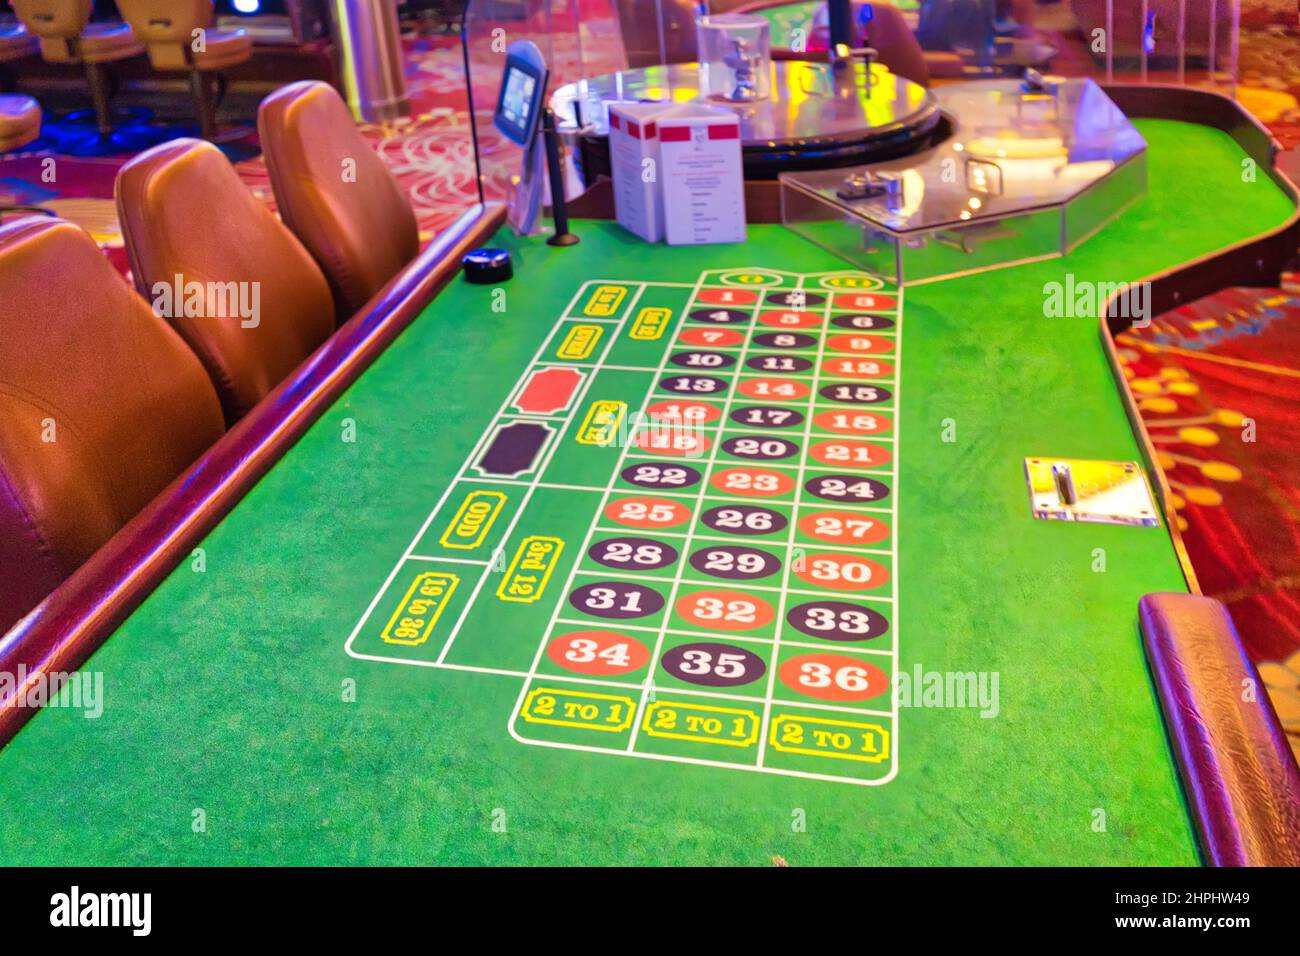 Casino Las Vegas - Table de Jeux de hasard - Levée de Fond - Fondation -  Poker - Black Jack - Roulette - Animation Concept